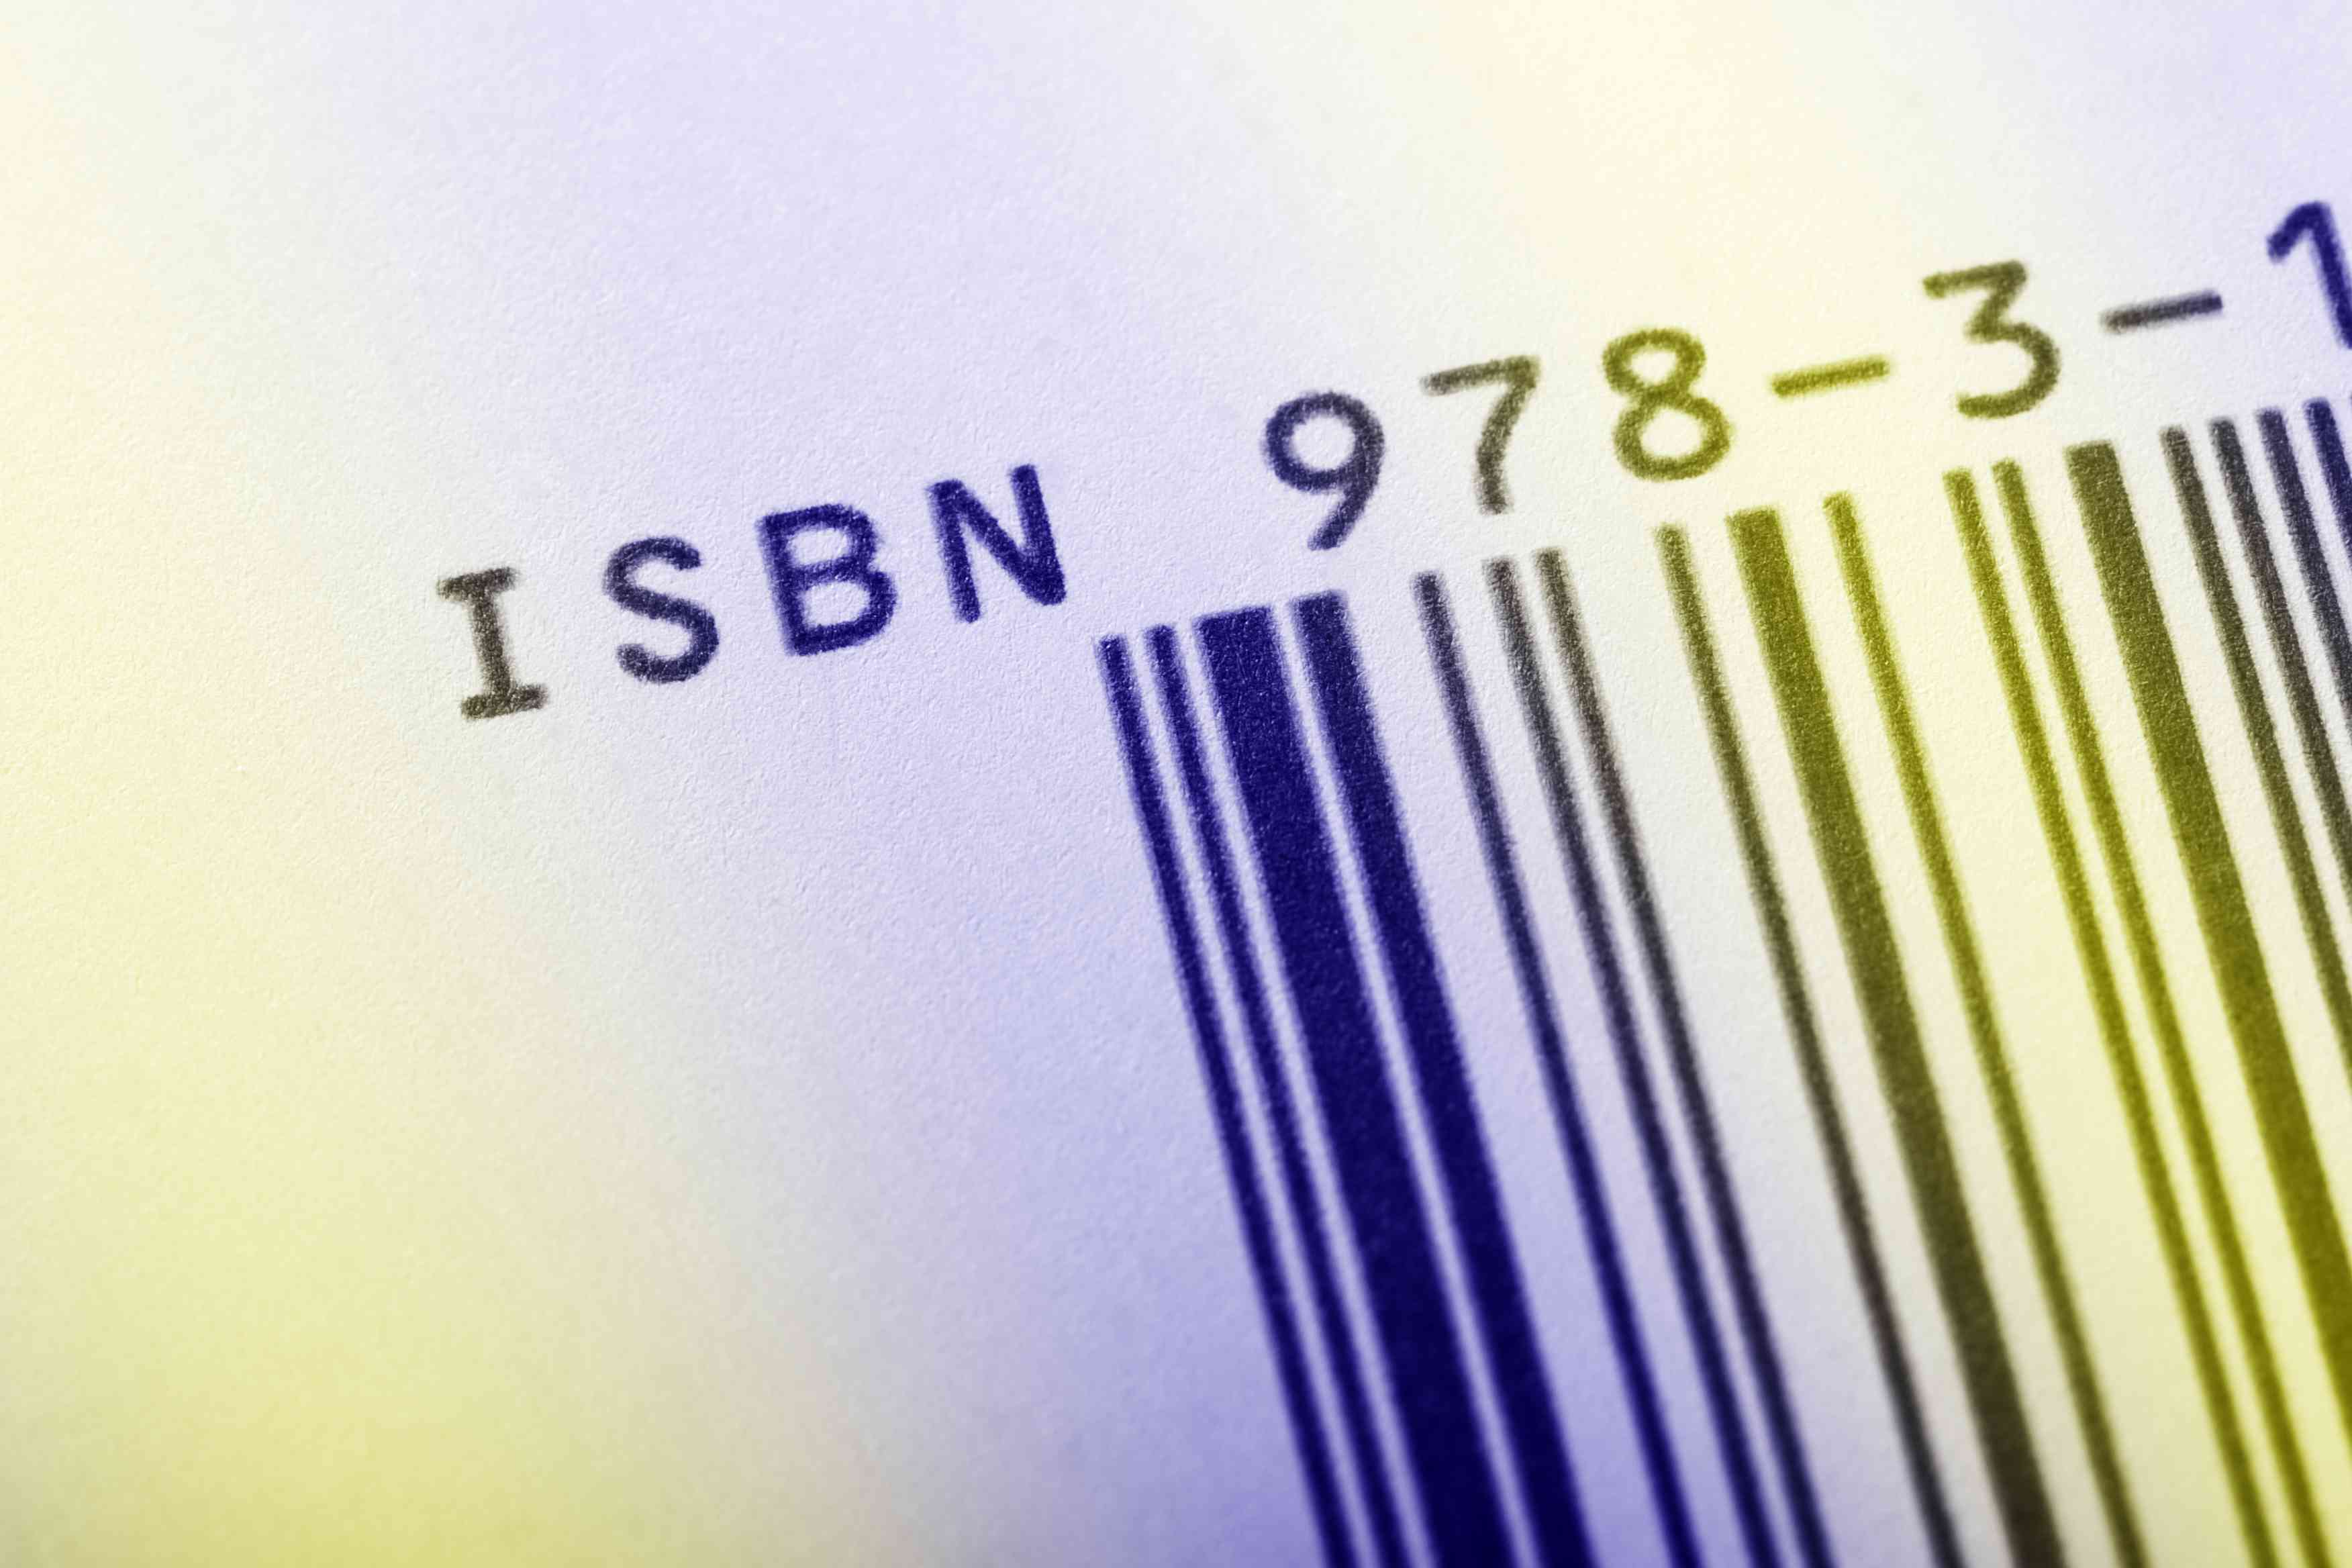 Código ISBN em um livro